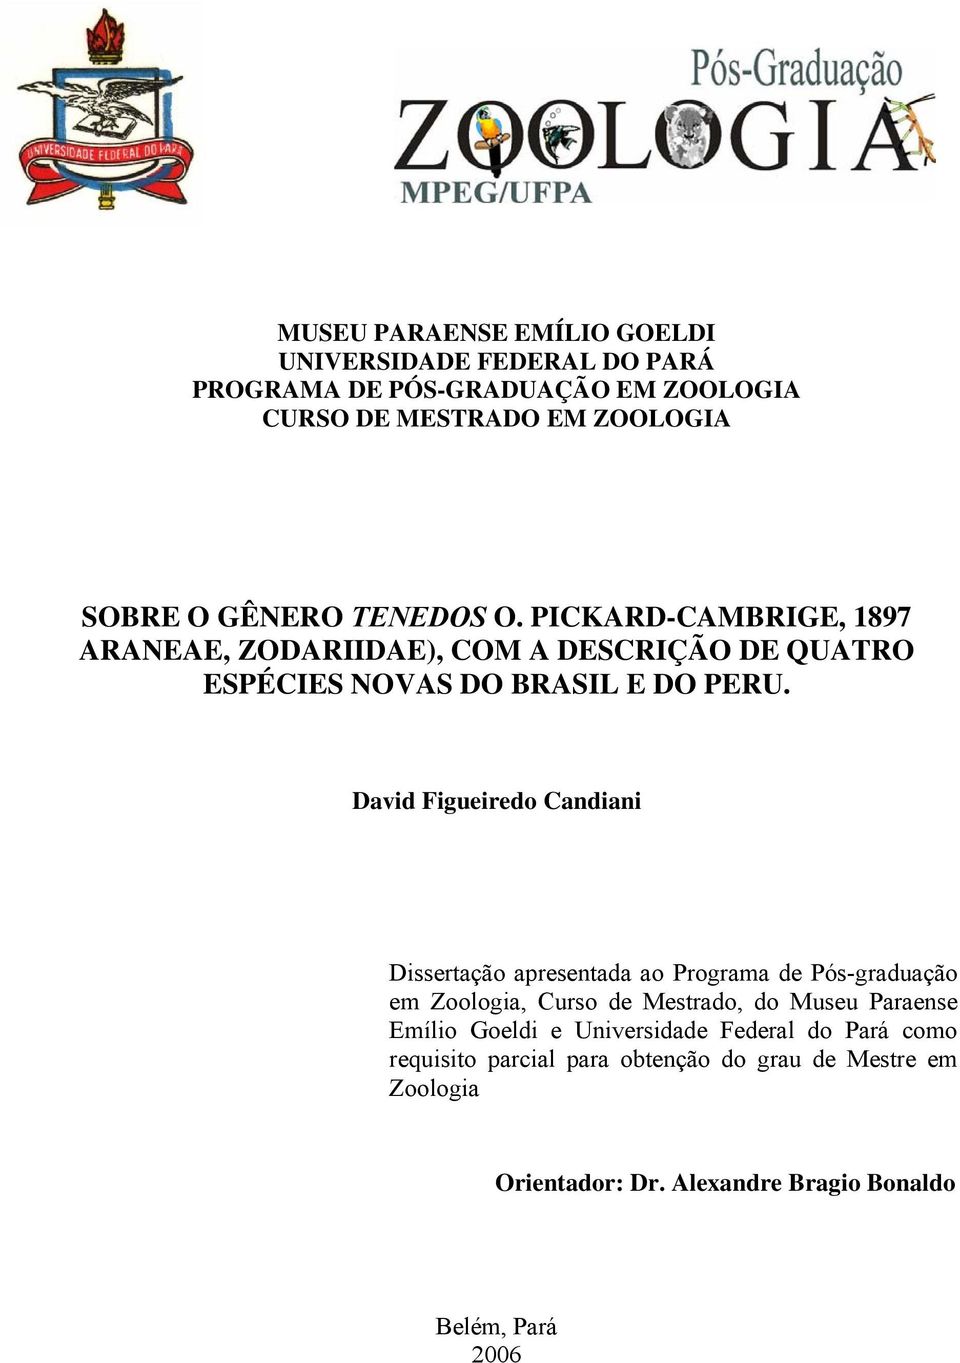 David Figueiredo Candiani Dissertação apresentada ao Programa de Pós-graduação em Zoologia, Curso de Mestrado, do Museu Paraense Emílio